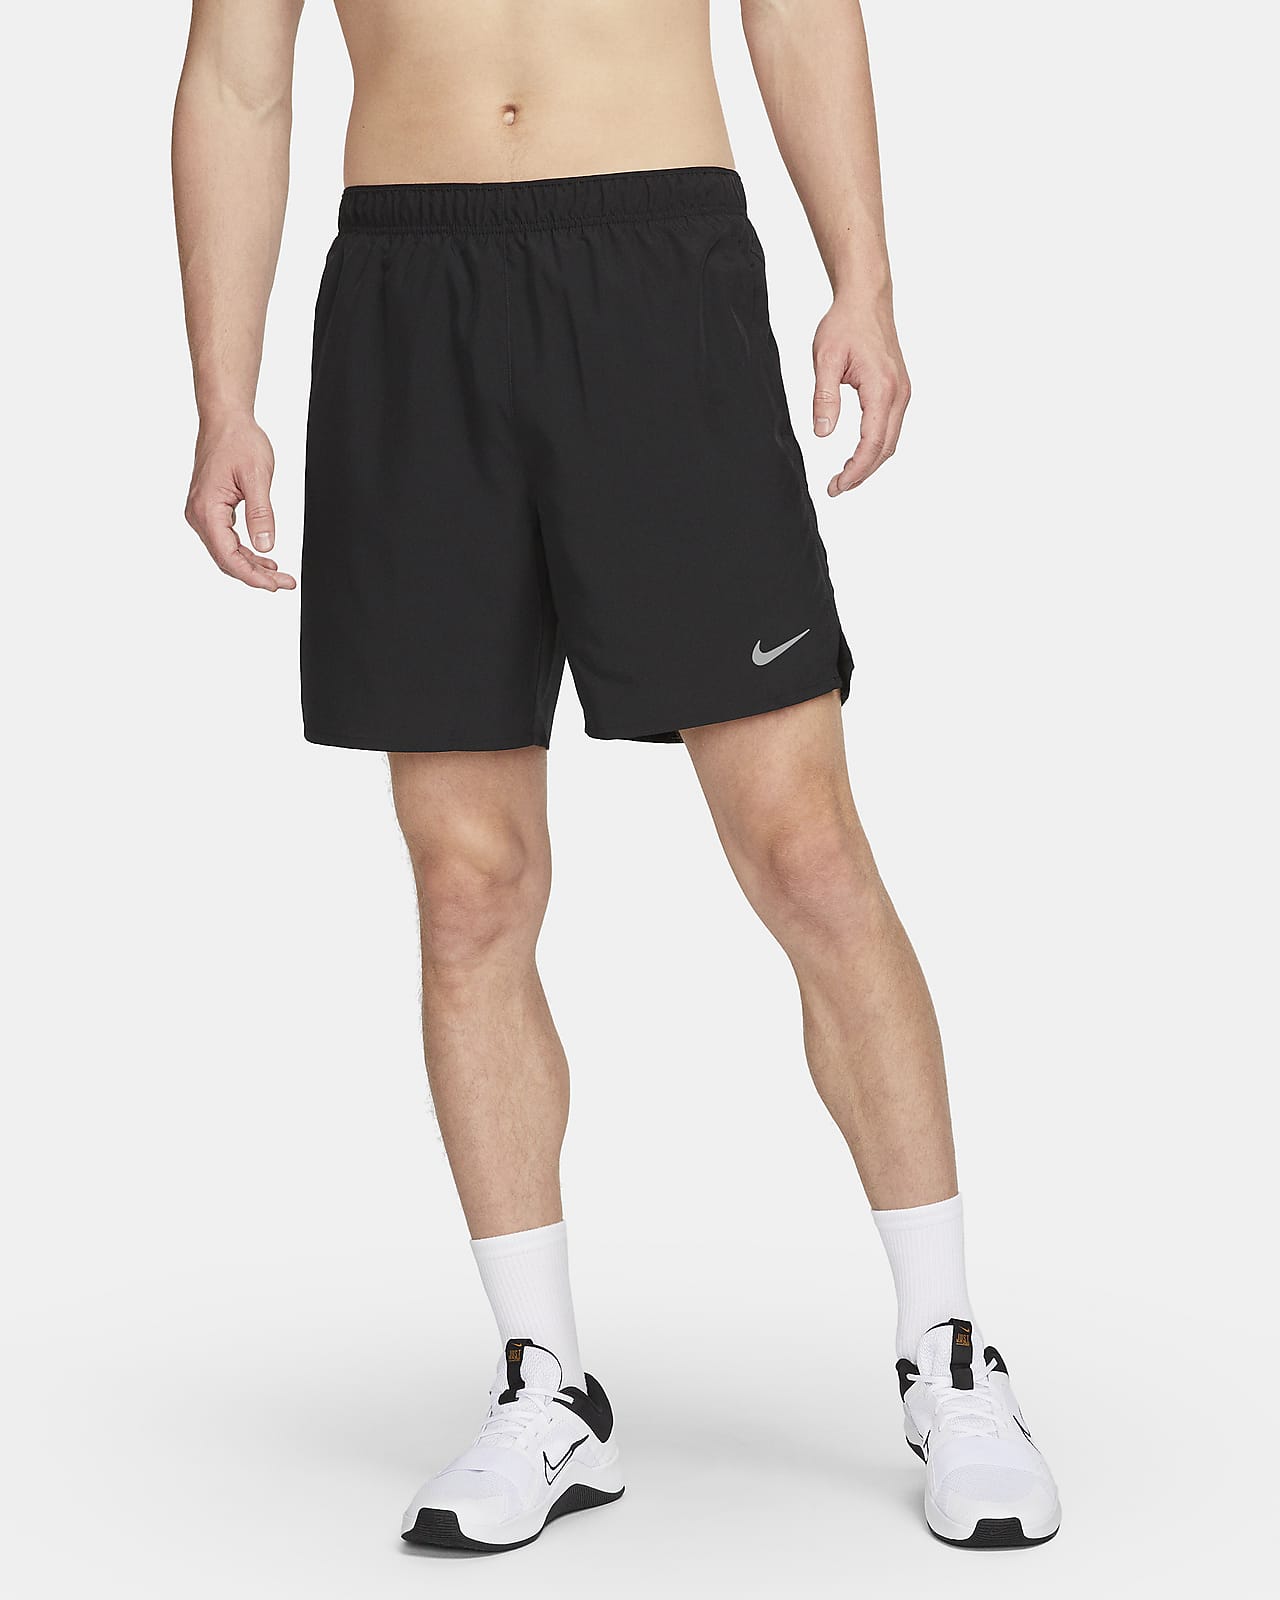 Shorts de running con forro de ropa interior Dri-FIT cm hombre Nike Challenger. Nike MX